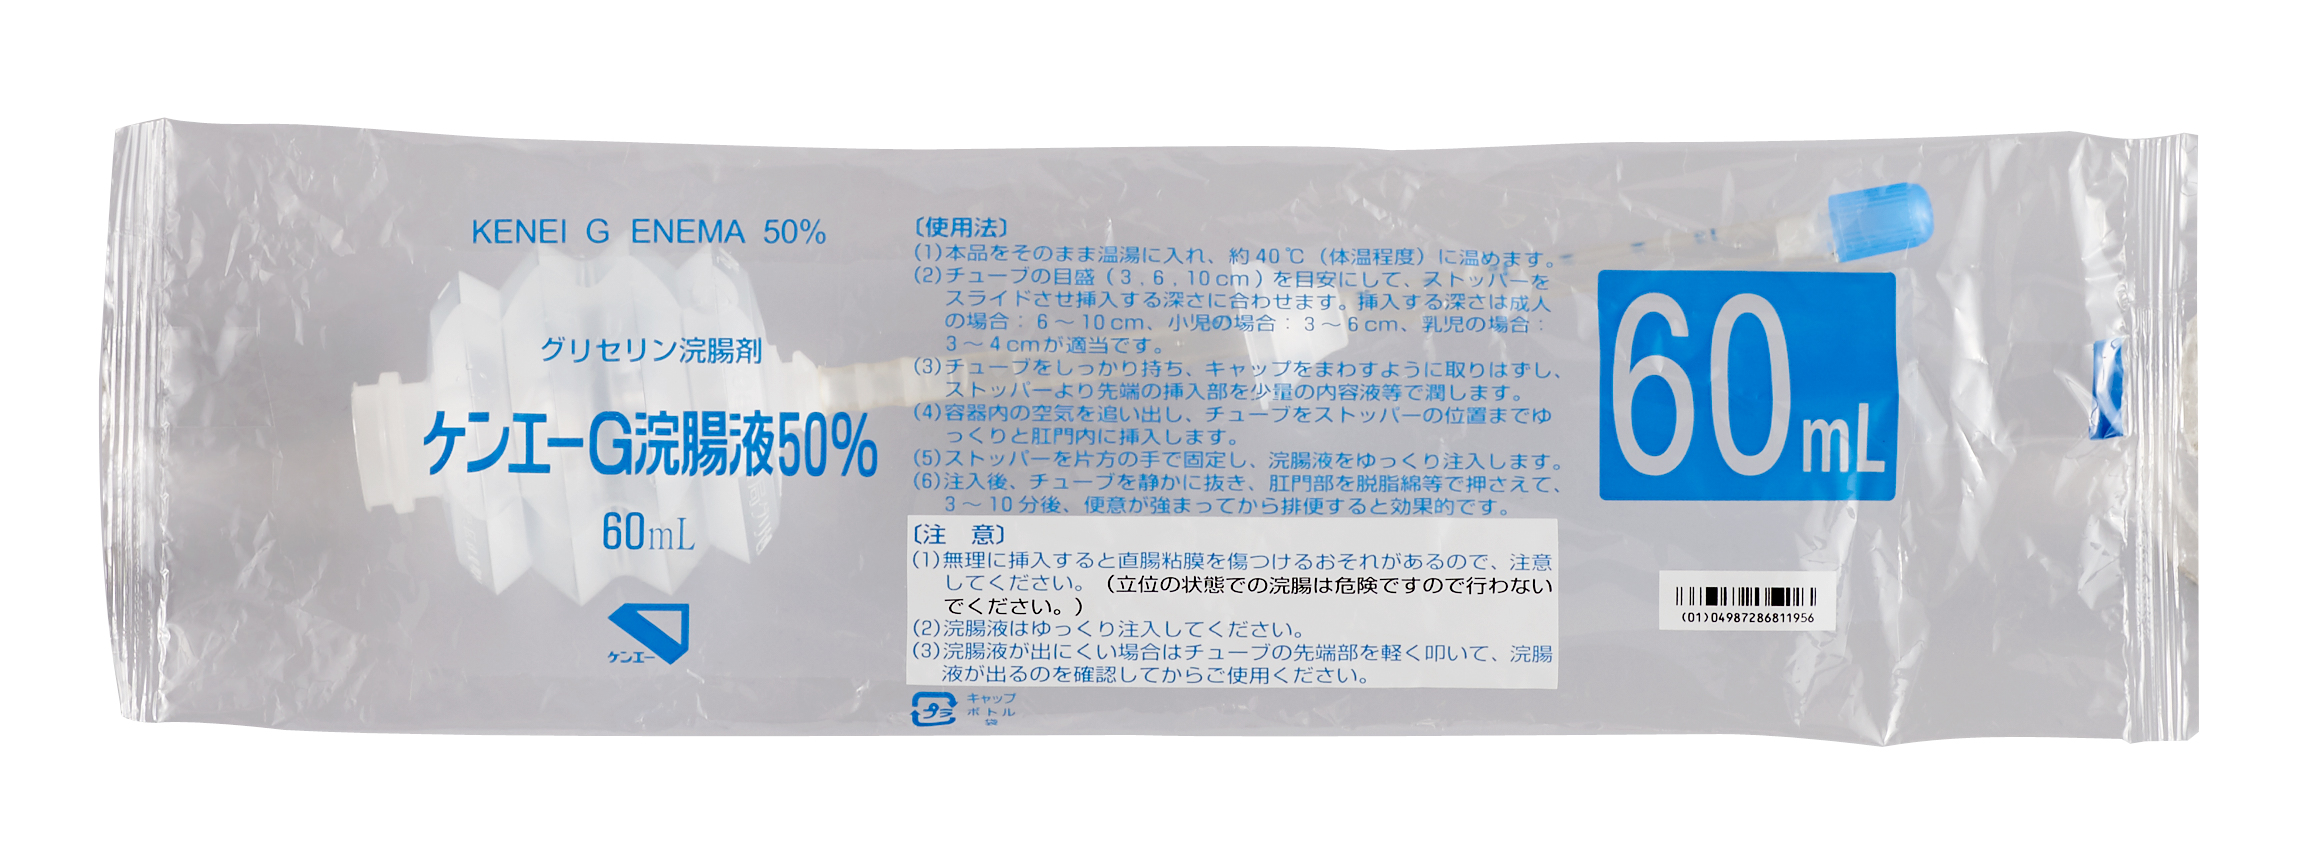 ケンエーg浣腸液50 Lタイプ 健栄製薬株式会社 感染対策 手洗いの消毒用エタノールのトップメーカー